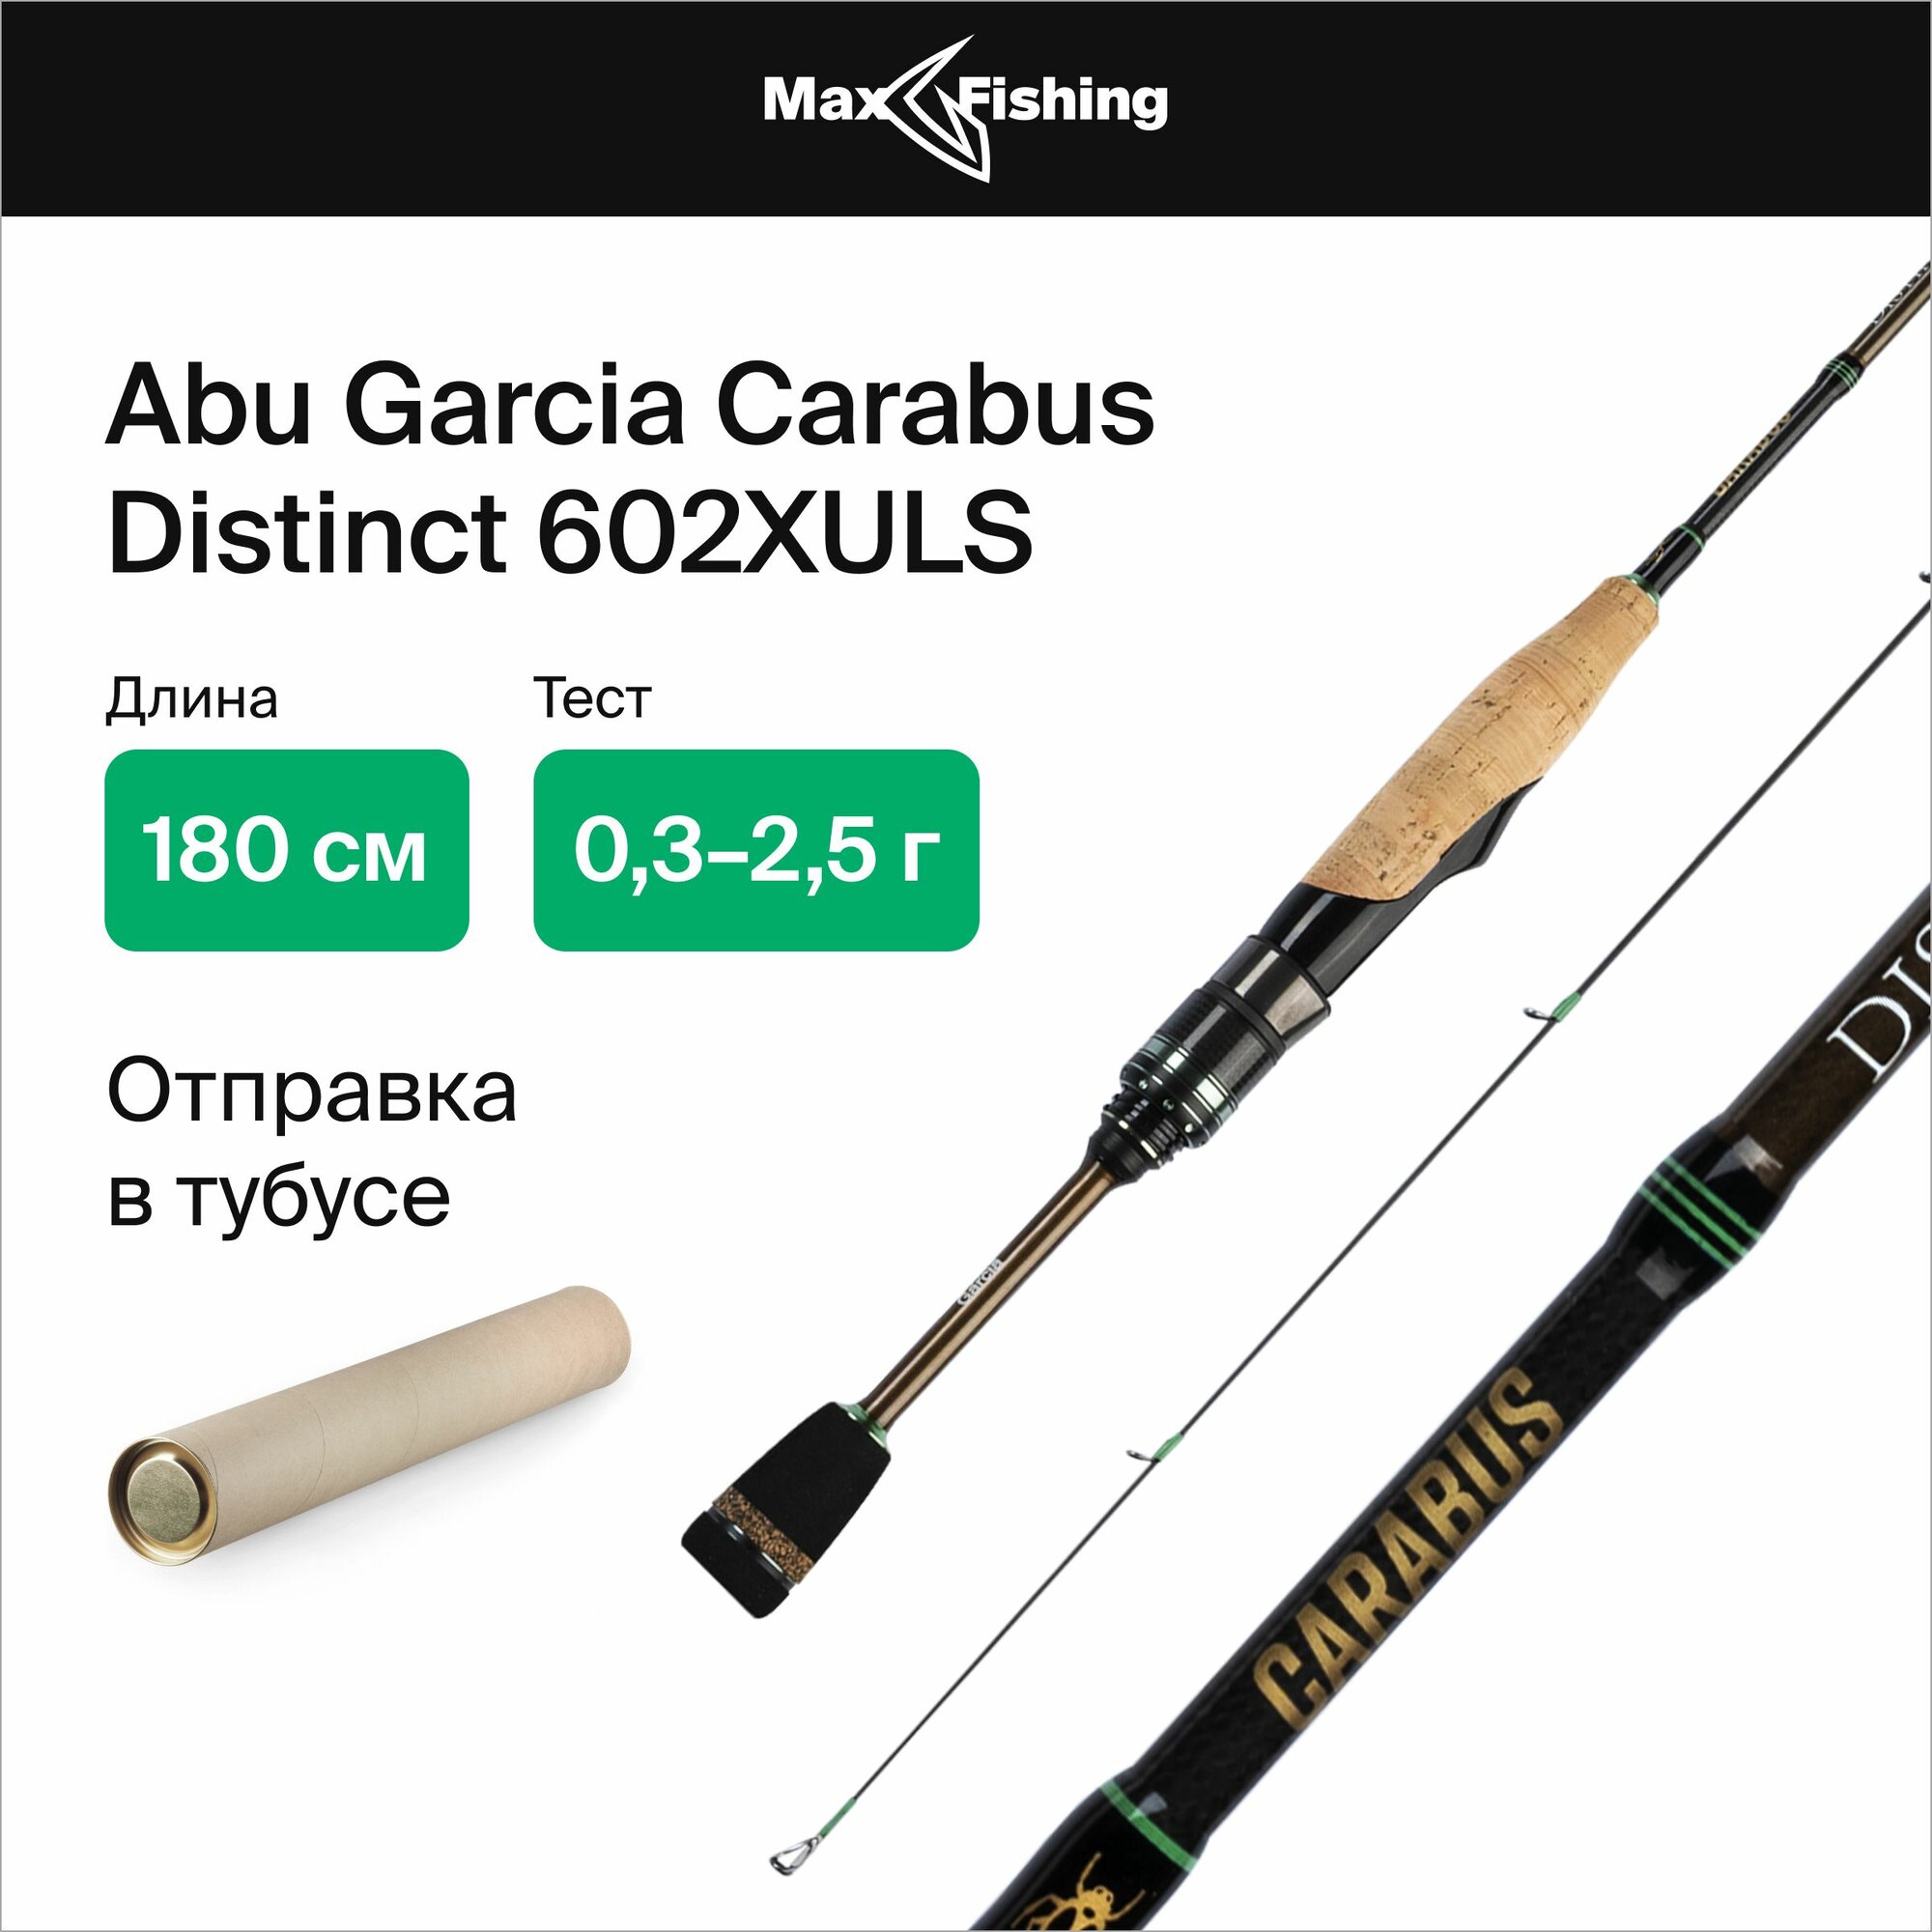 Спиннинг для рыбалки Abu Garcia Carabus Distinct 602XULS 0,3-2,5гр, 180 см, для ловли форели, микродижга и рокфишинга, удилище спиннинговое, ультралайт